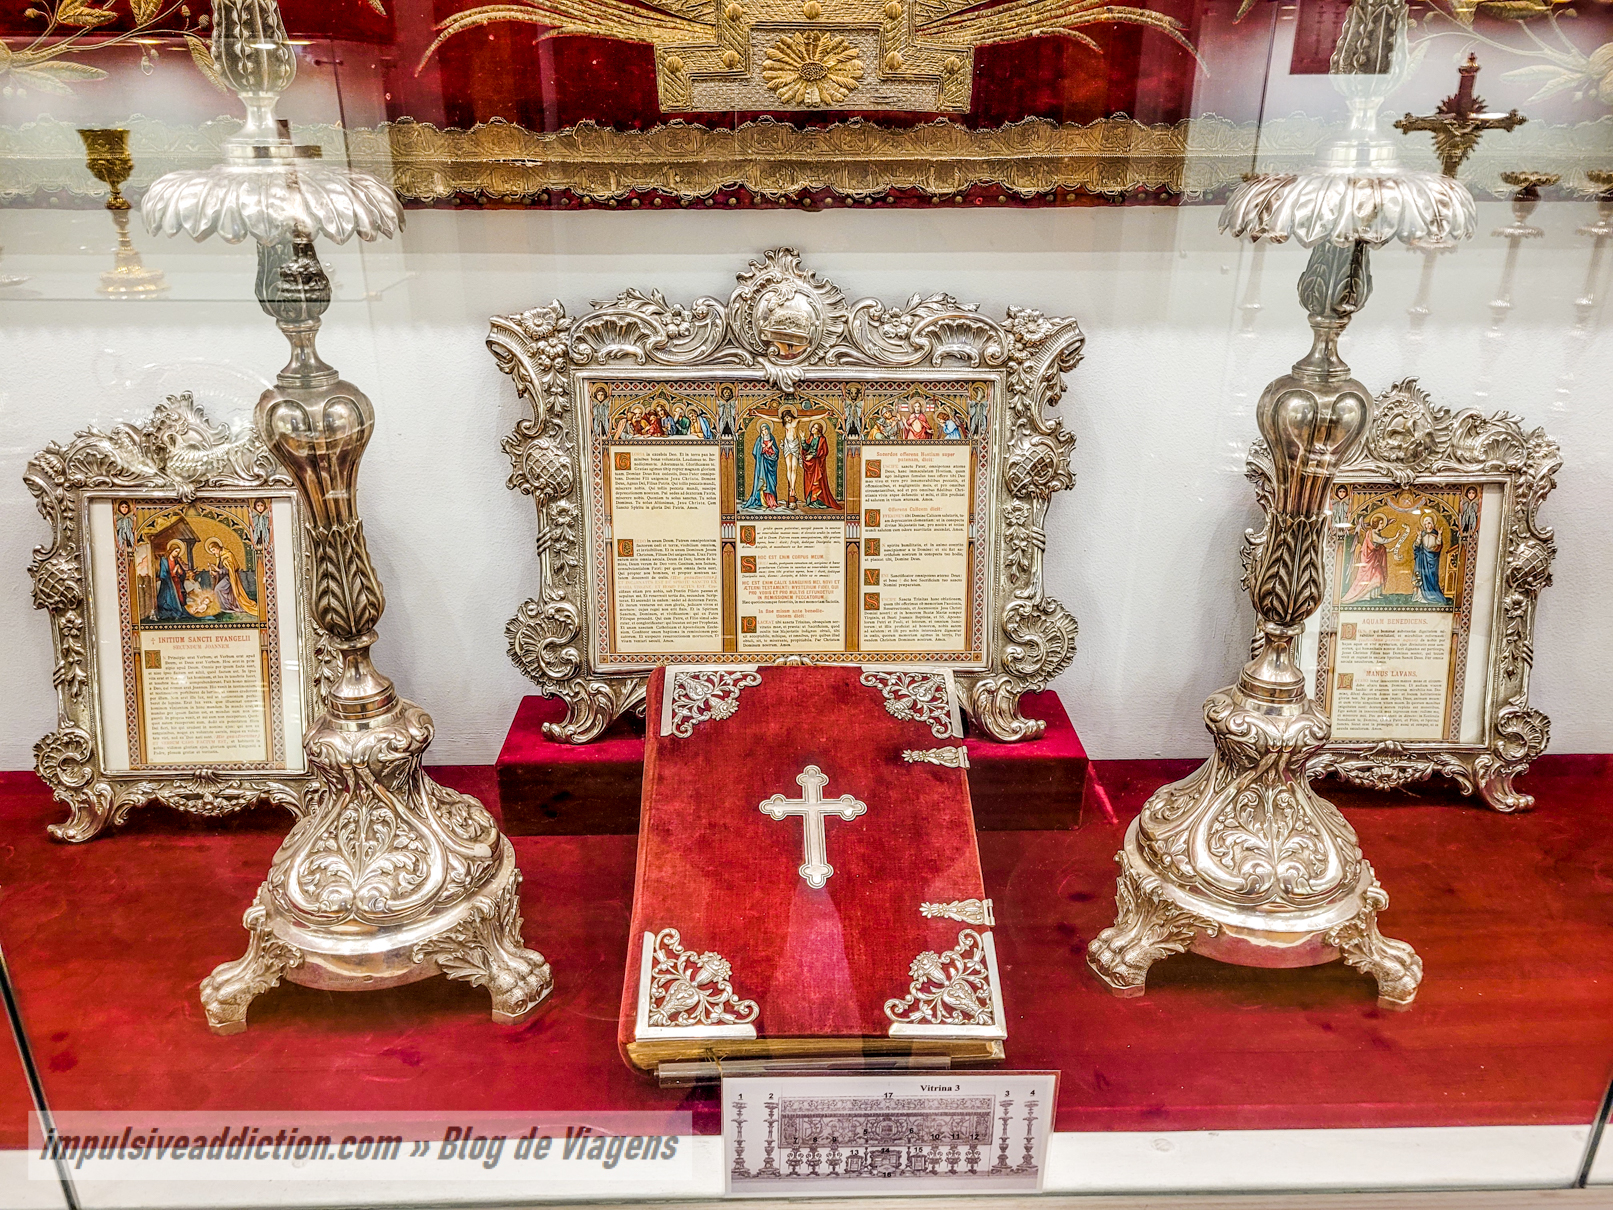 Museu de Arte Sacra do Bom Jesus de Matosinhos